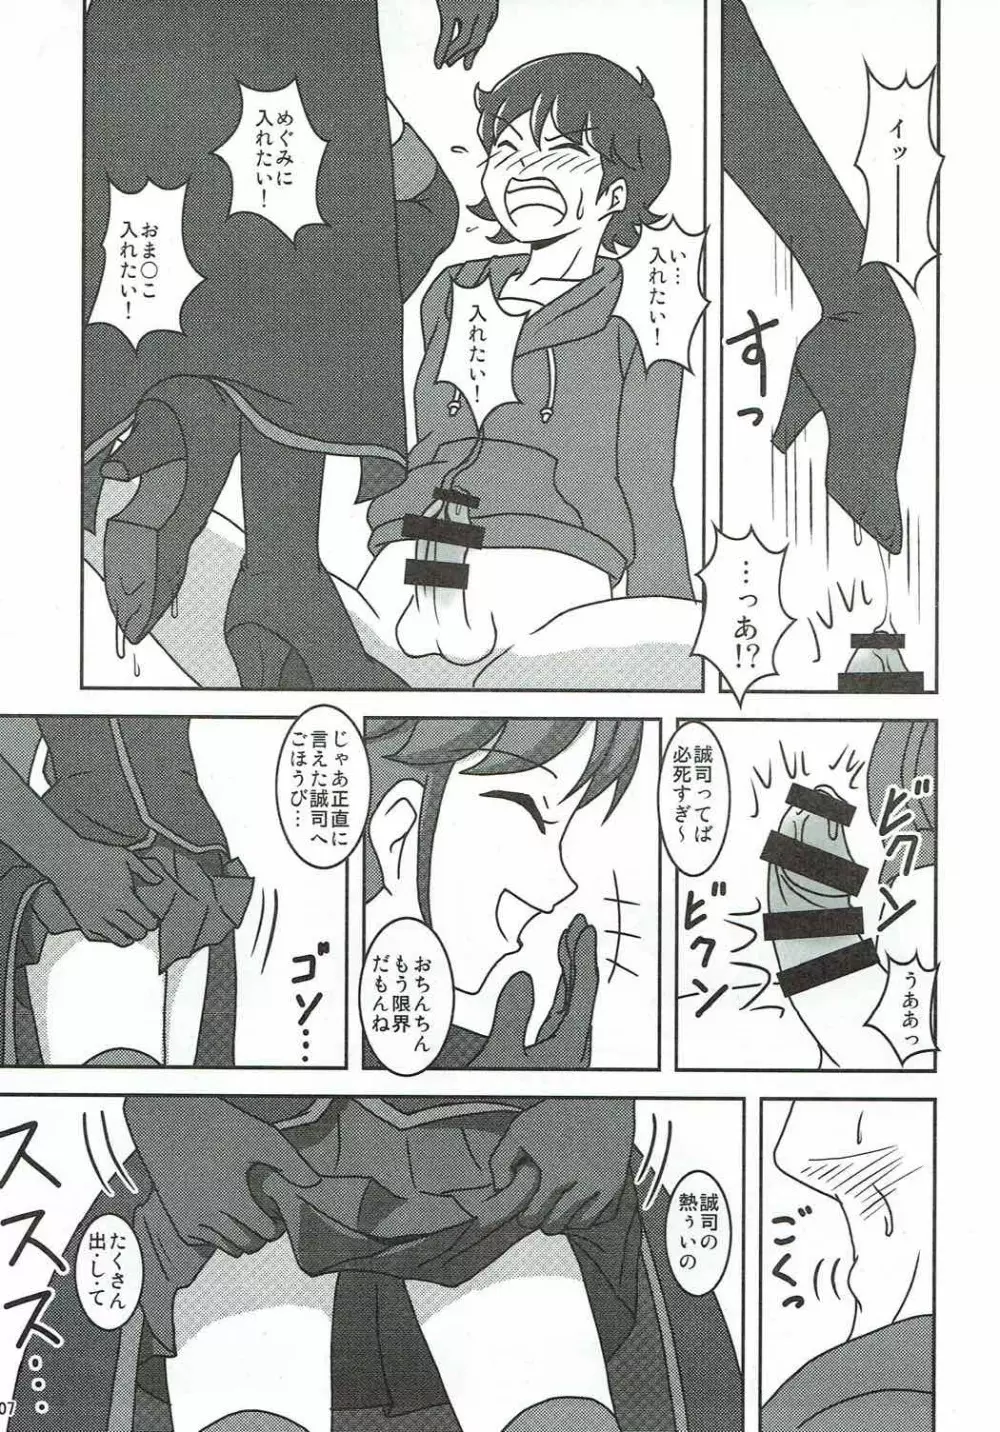 ハピネスチャージズリキュア!2 - page8